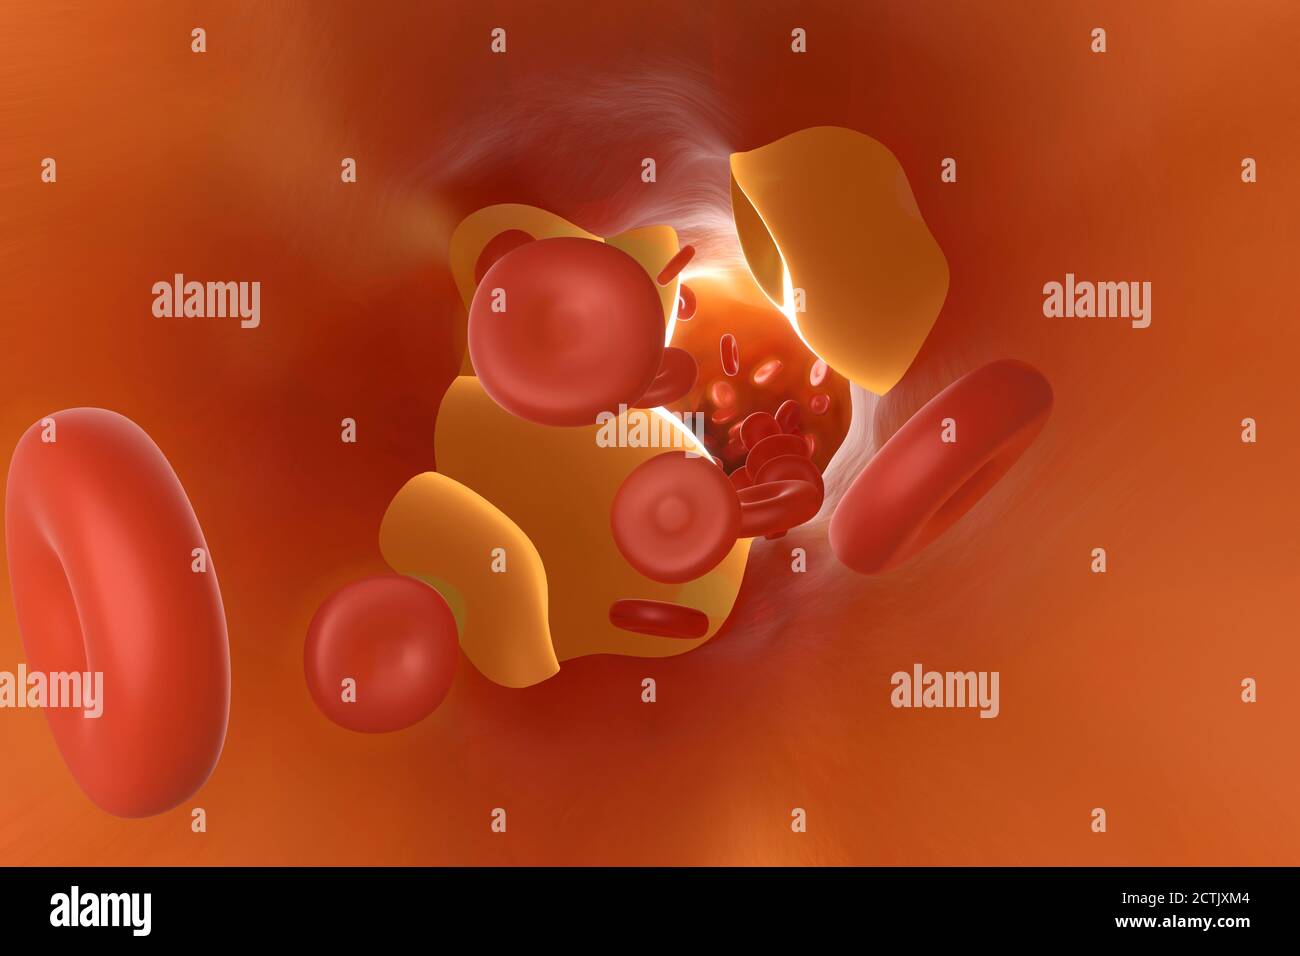 Dreidimensionale Darstellung der Arterie, die durch Cholesterin verstopft ist Stockfoto